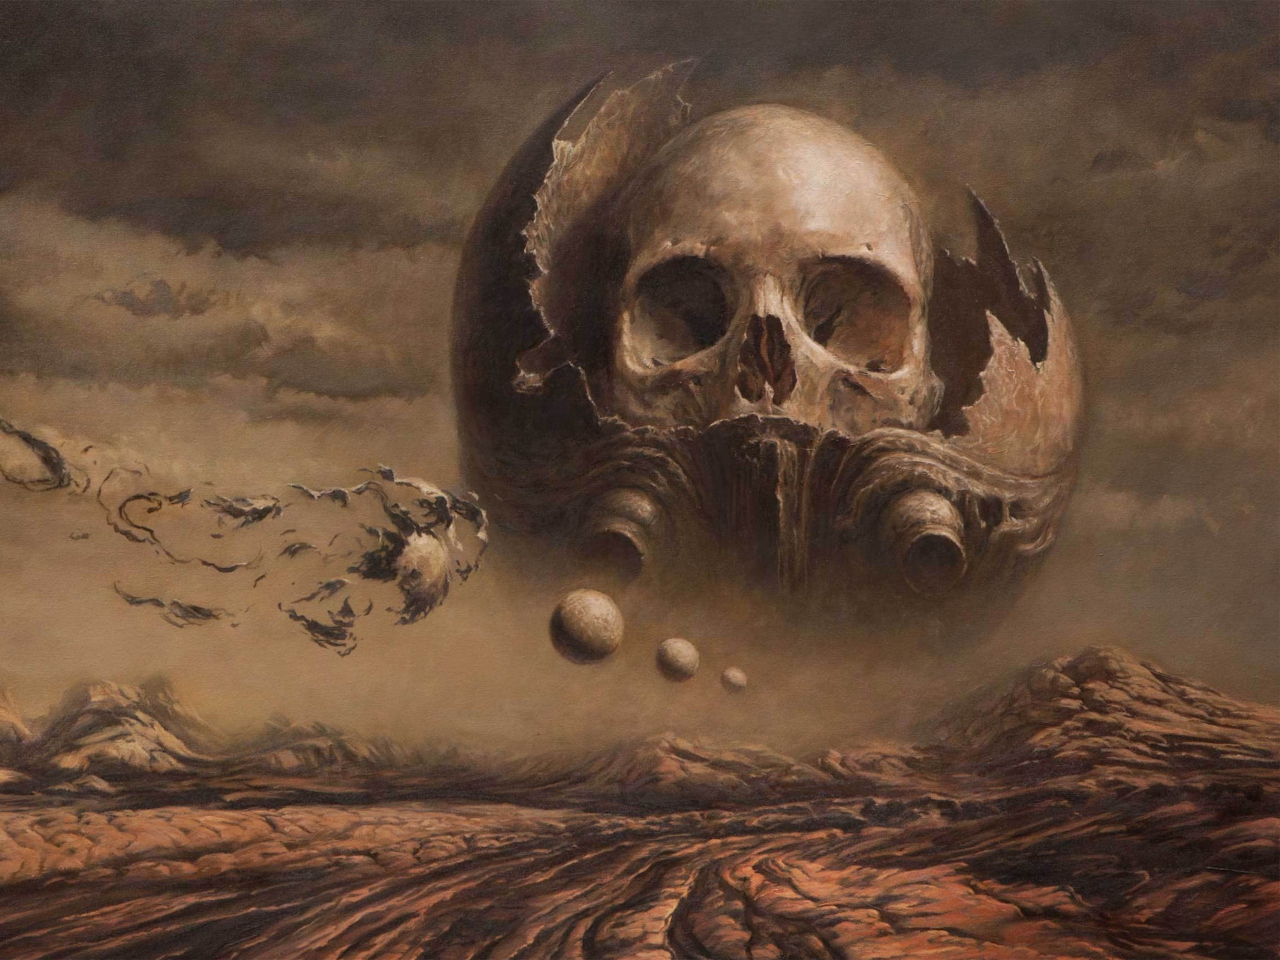 Das Skull Desert Wallpaper 1280x960